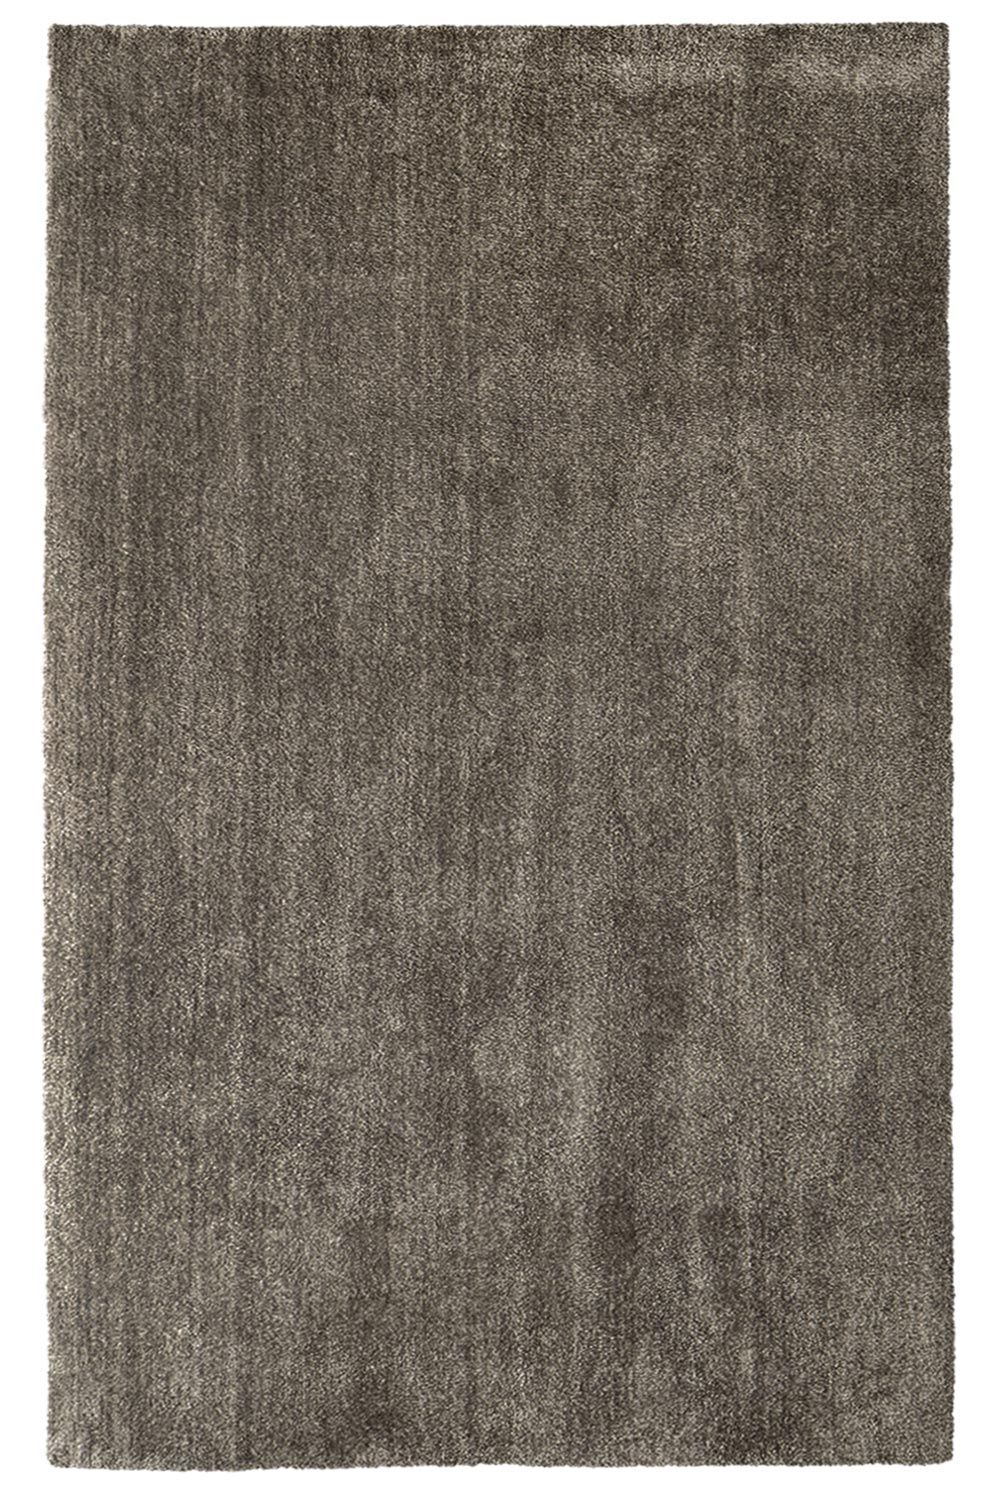 Kusový koberec Labrador 71351 080 Taupe 200x290 cm